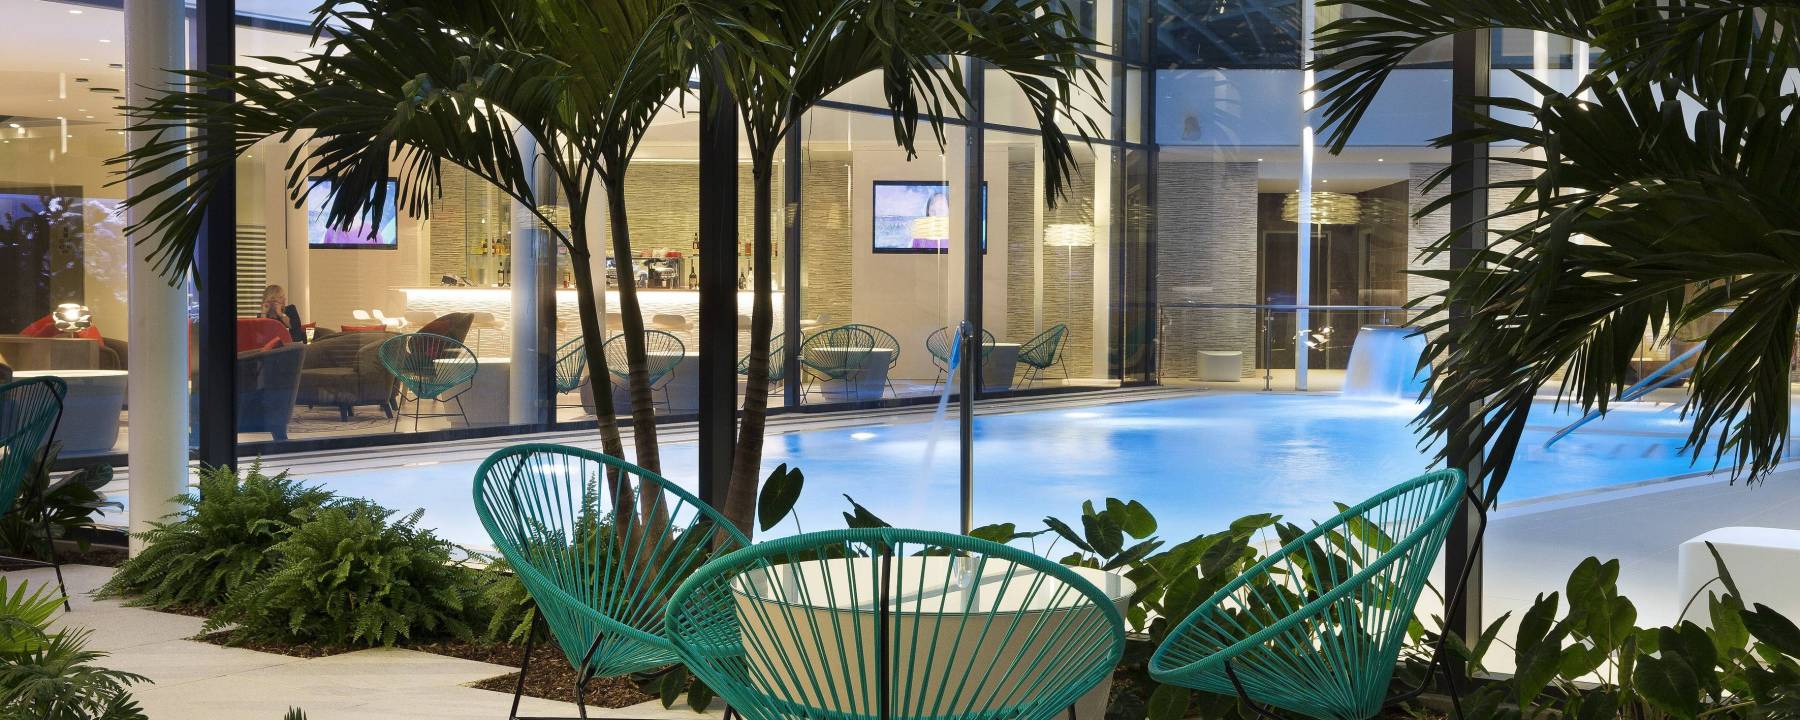 Recrutement: Responsable Restauration W/M chez Oceania Hotels à Le Mesnil-Amelot